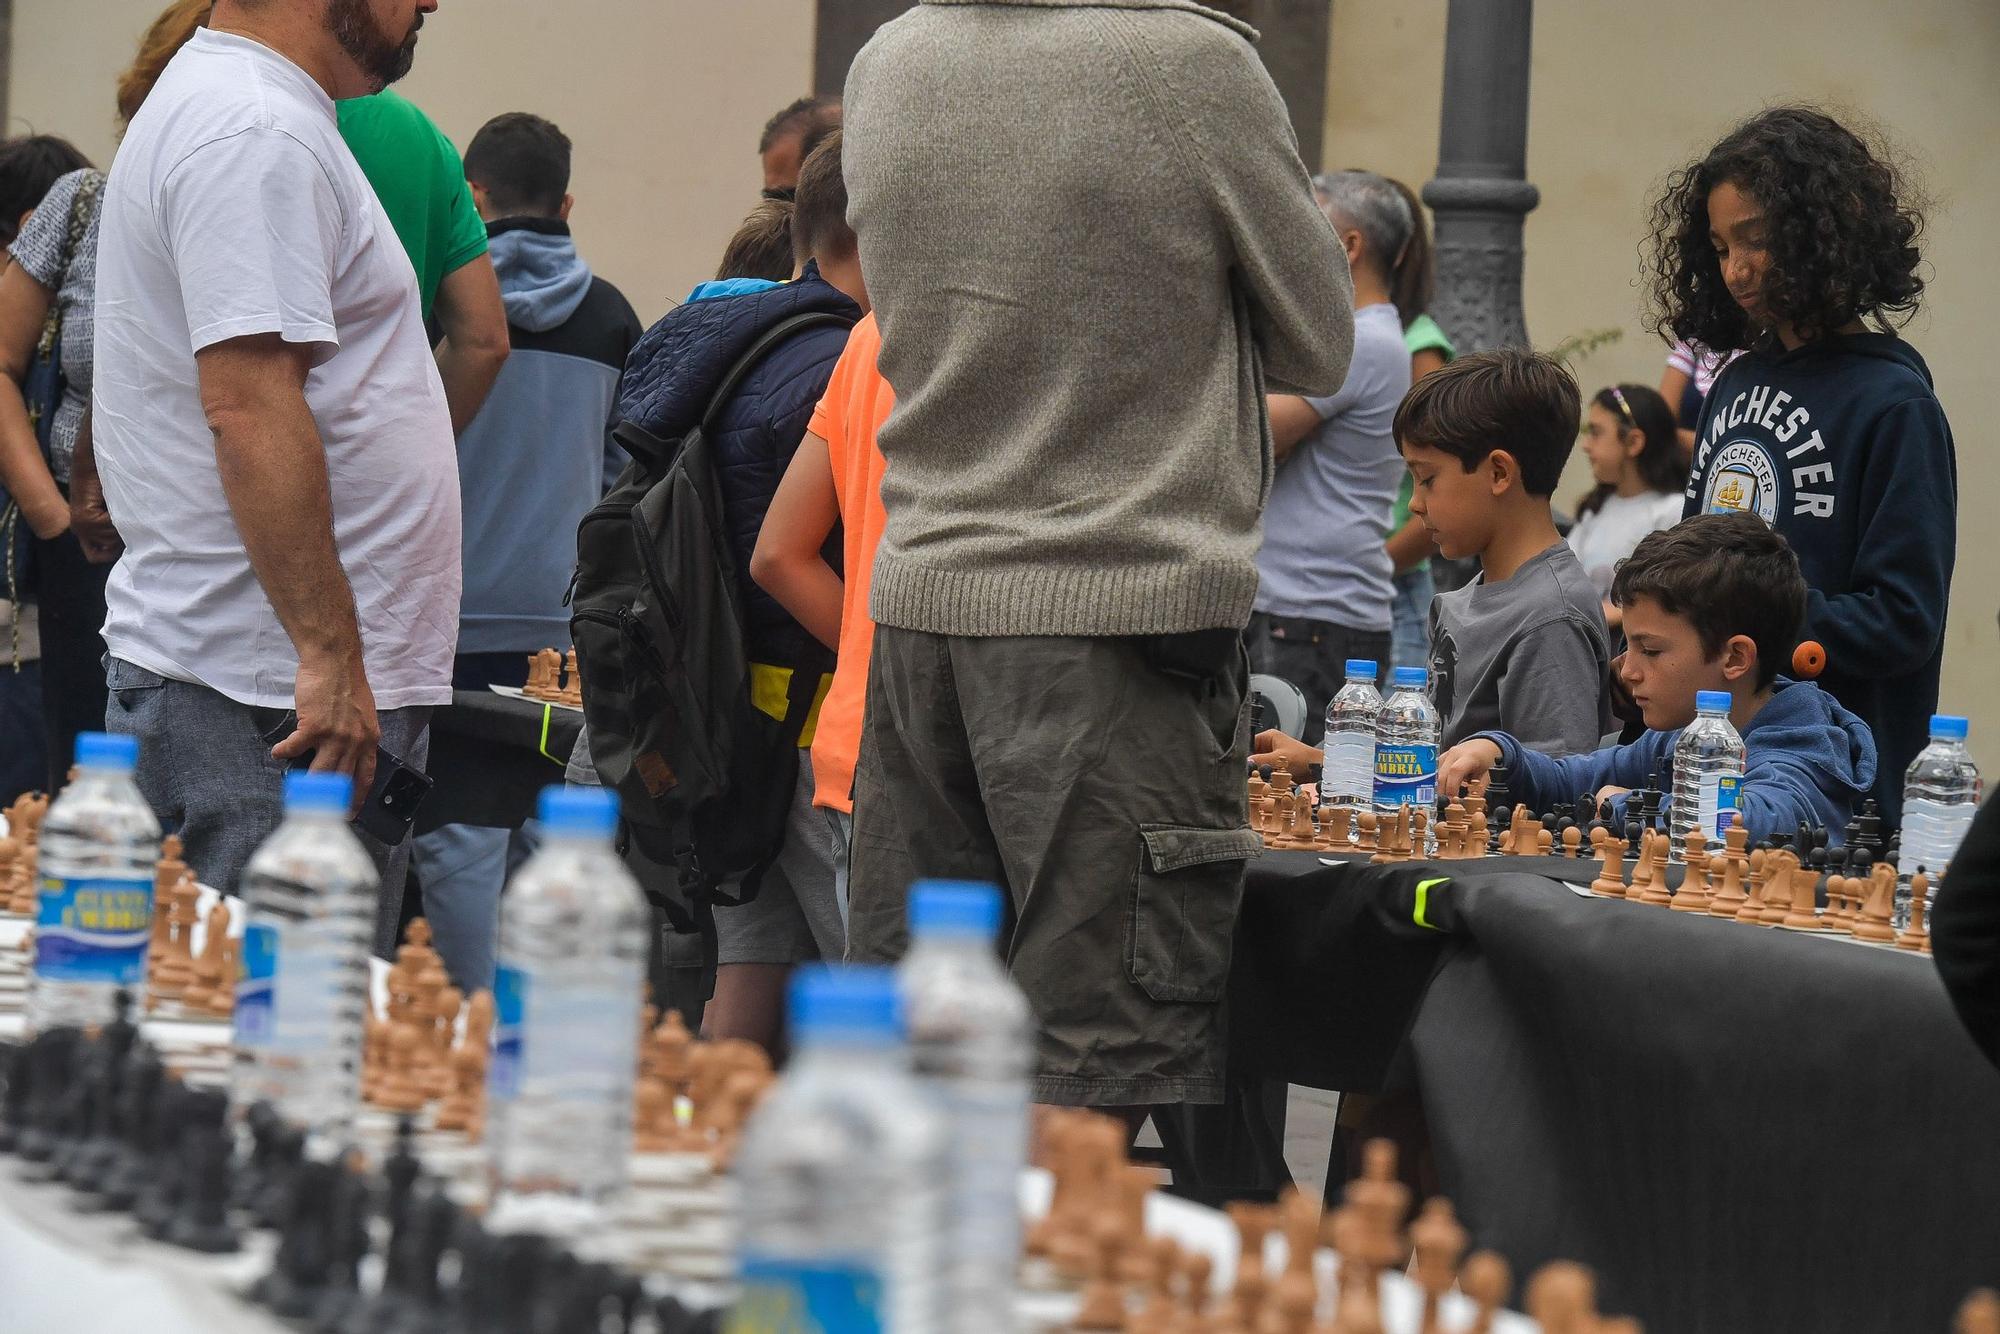 Partida simultánea de ajedrez en la Plaza de Santa Ana en las fiestas fundacionales